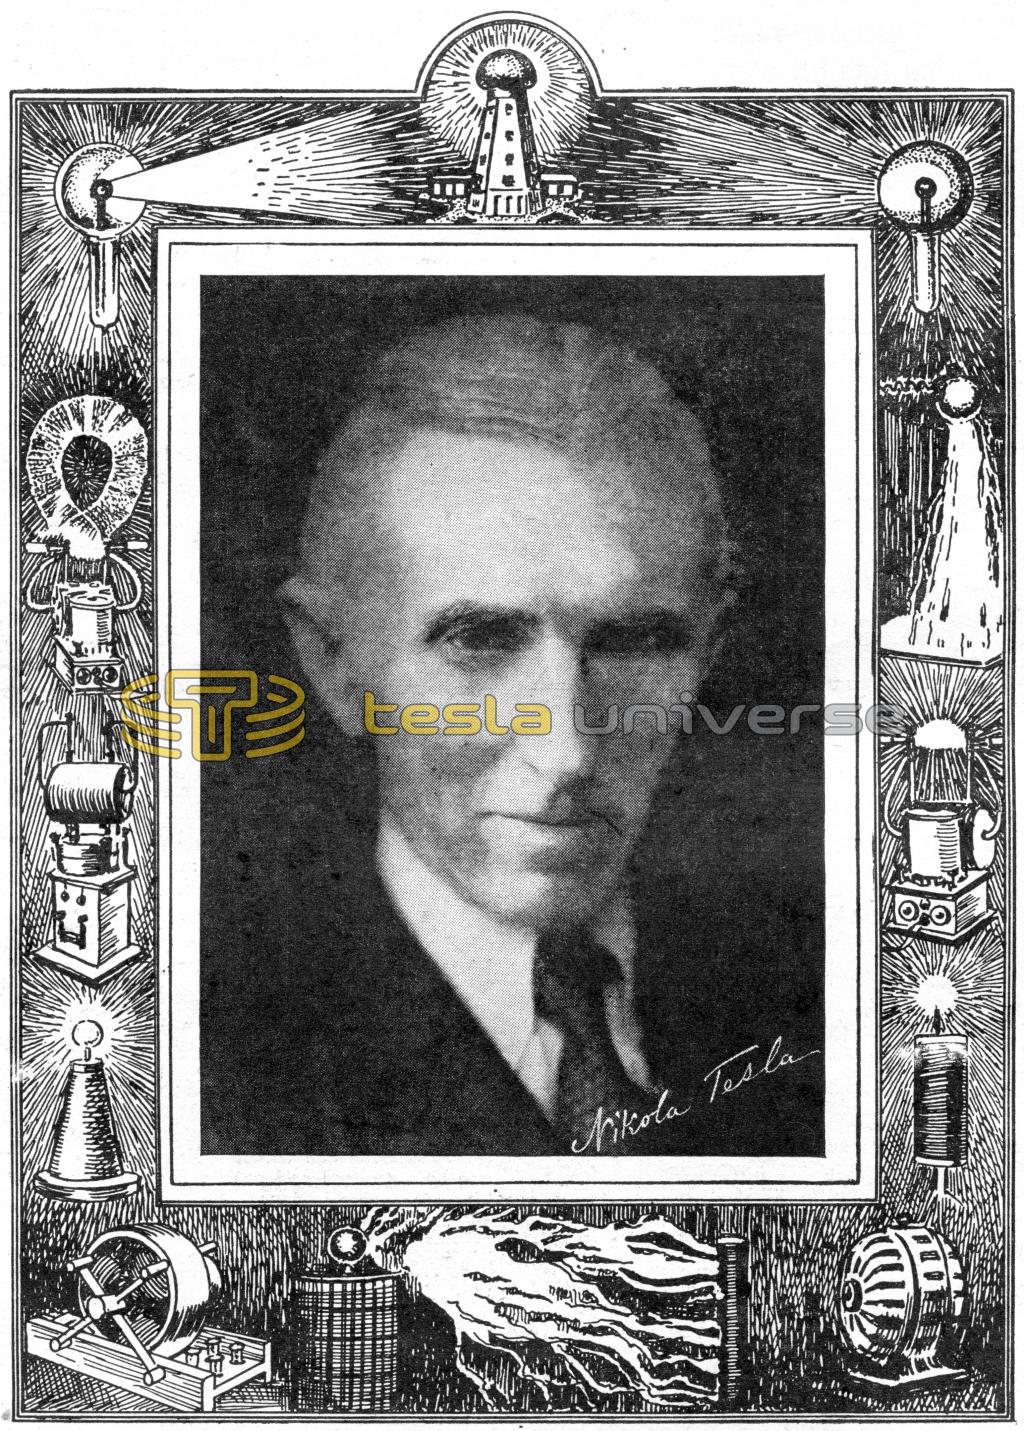 Framed Version of the 1933 Nikola Tesla Portrait.